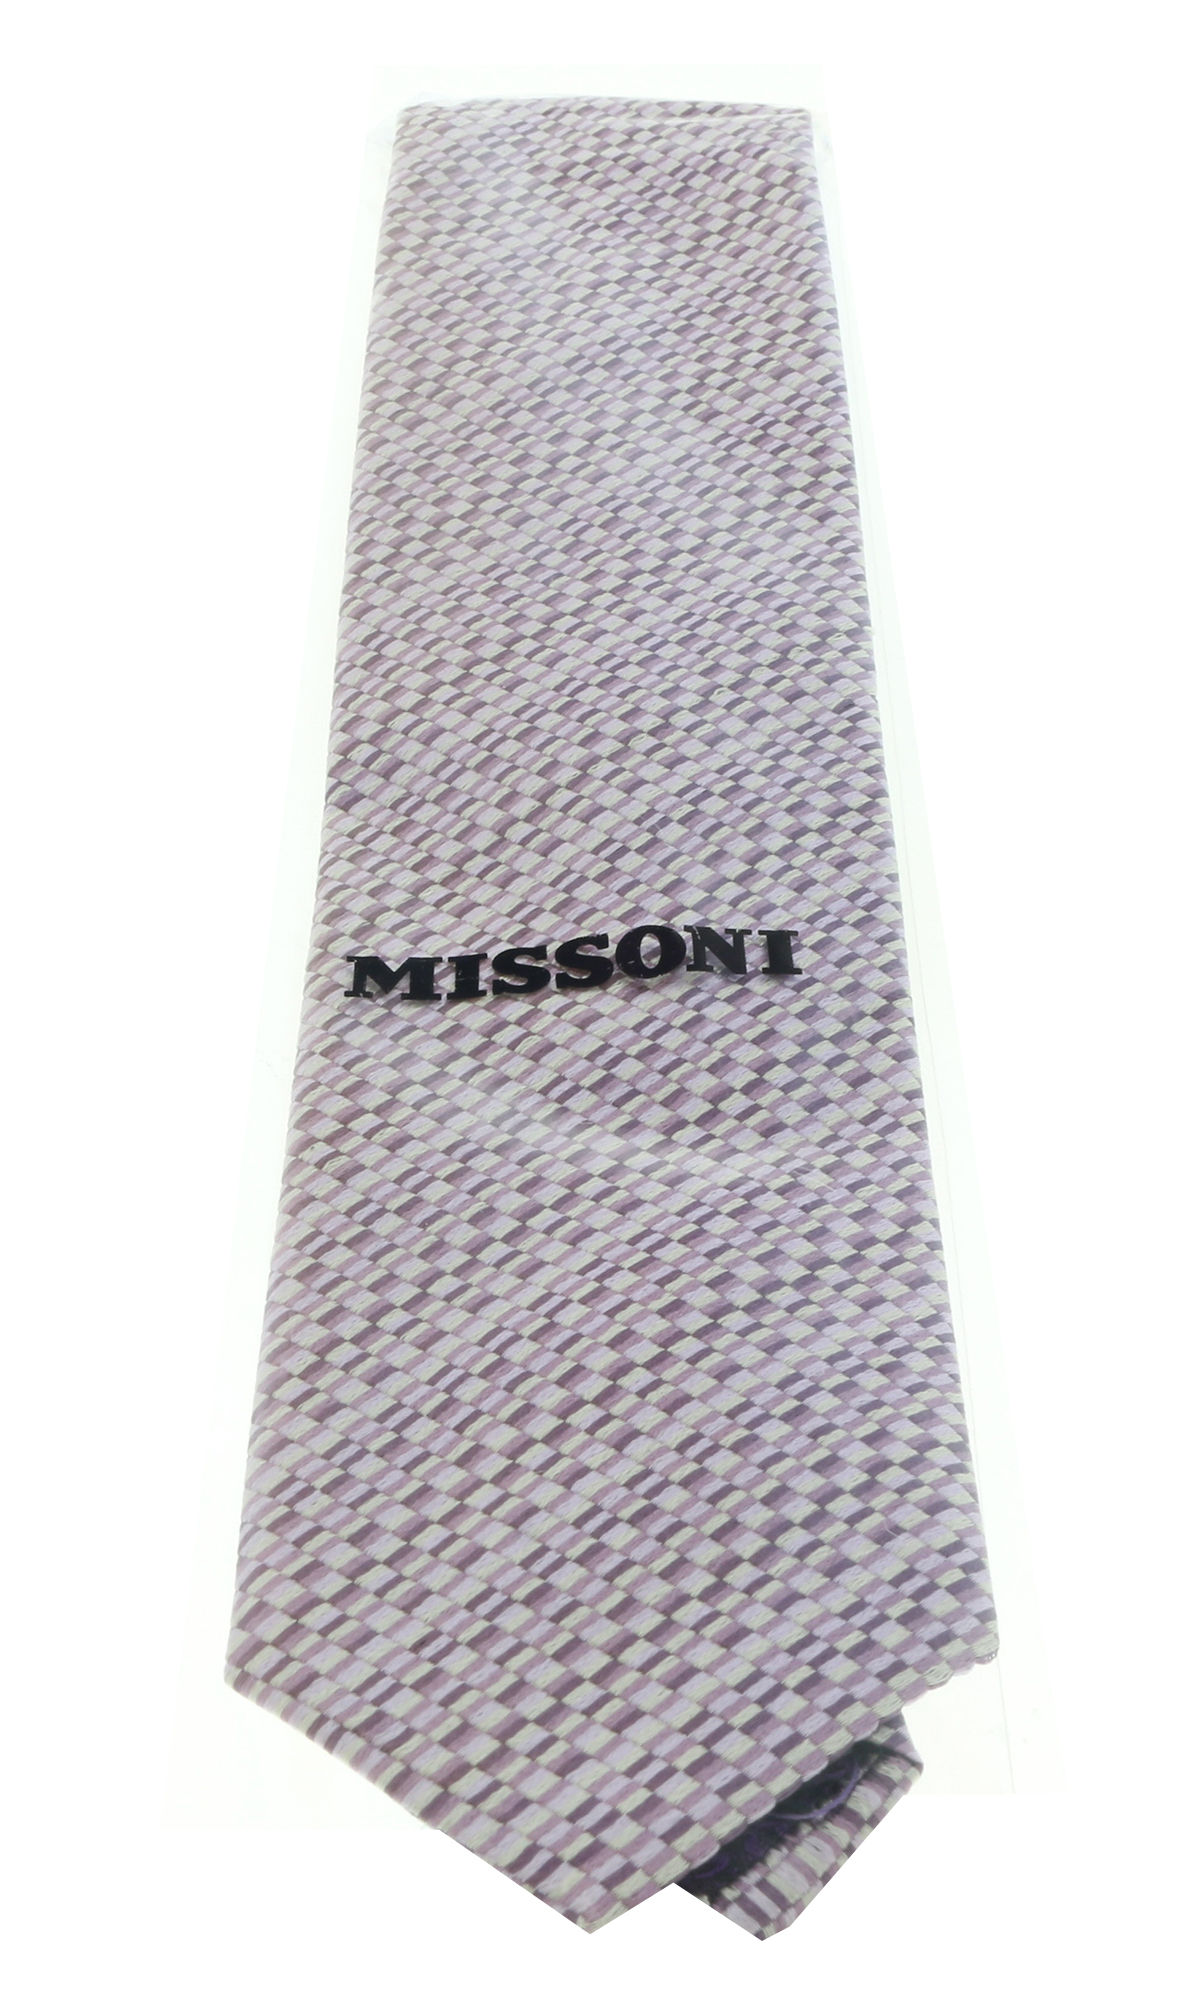 Missoni U5299 Purple/Silver Check 100% Silk Tie for mens - image 3 of 4